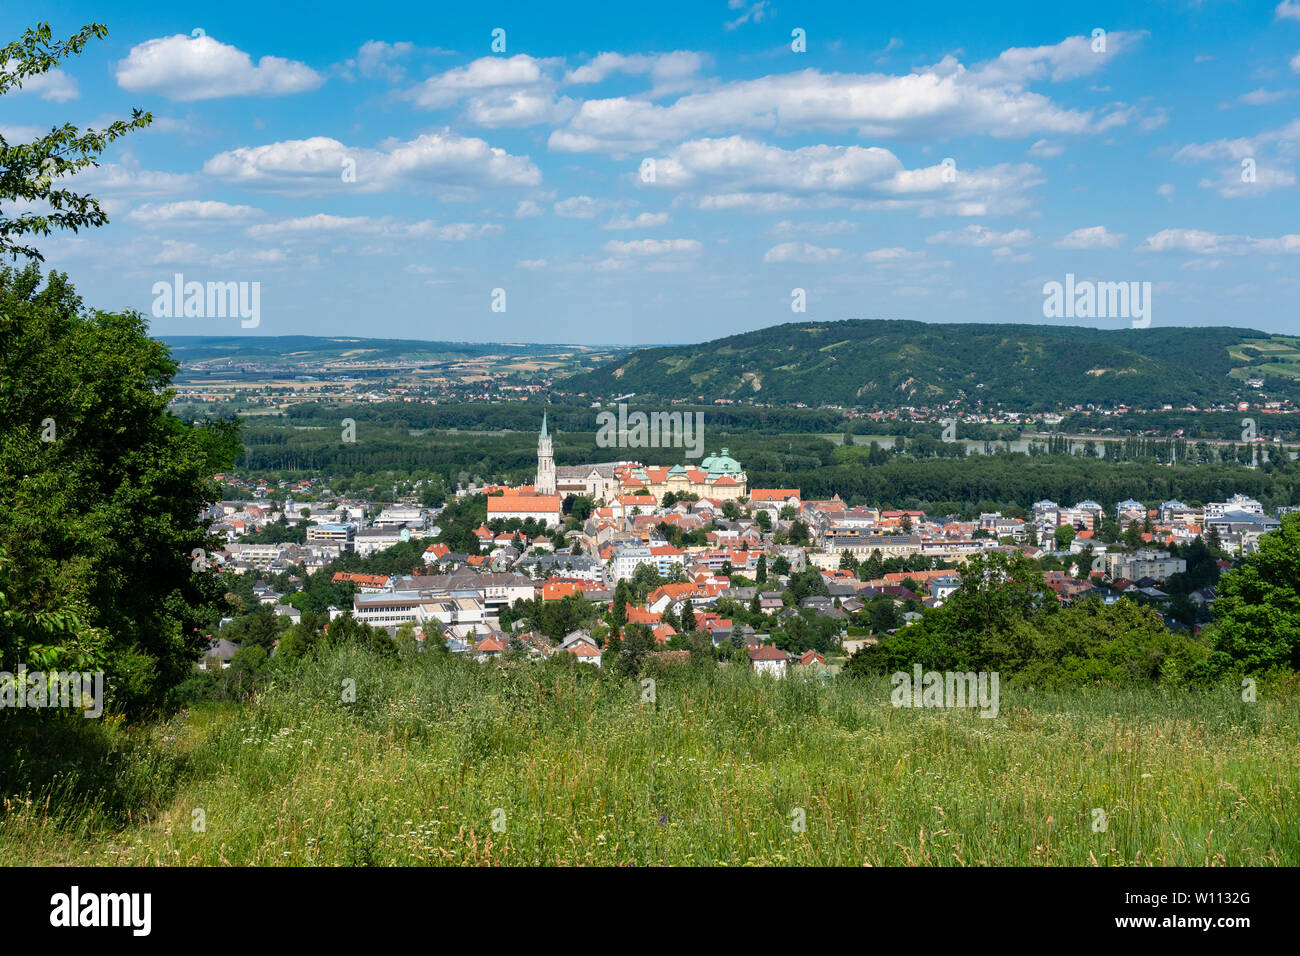 Klosterneuburg cityscape view. A suburb of Vienna in the Lower Austria Weinviertel region. Stock Photo